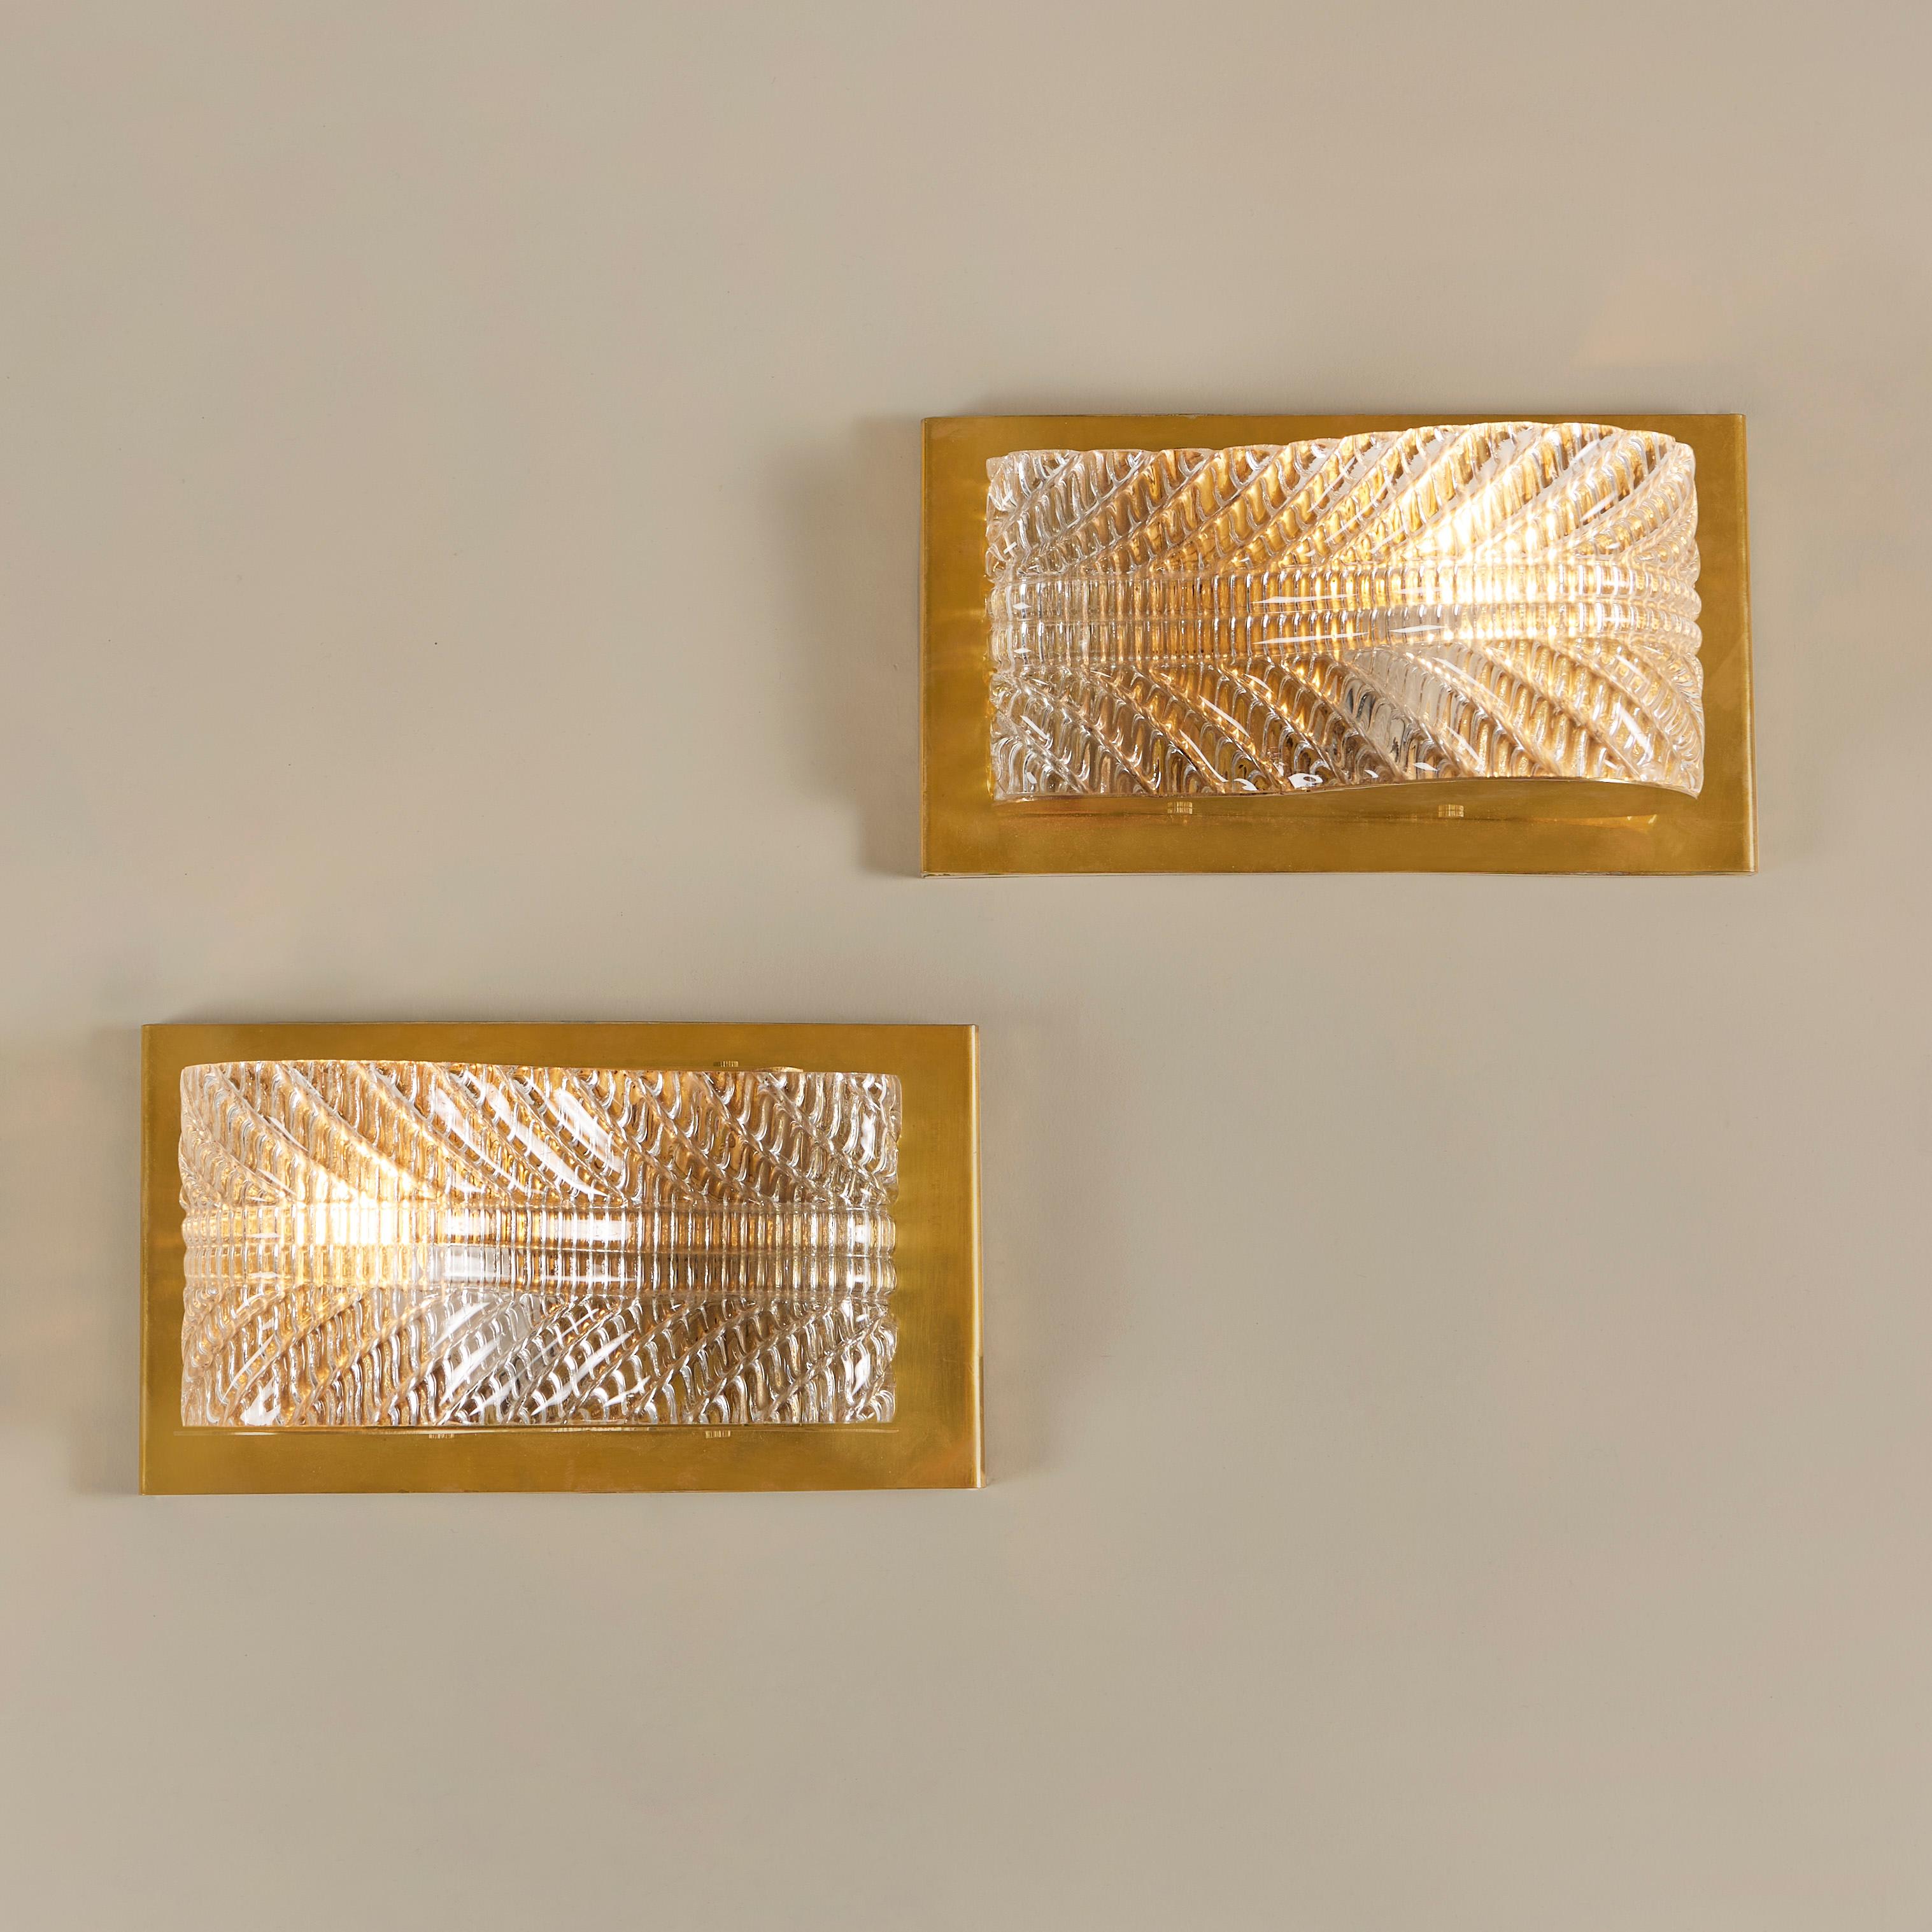 Ein Paar glamouröse geschwungene Wandleuchten. Texturiertes Murano-Glas mit eleganten Details sitzt auf einer rechteckigen Messinggrundplatte. Die Reflexion von strukturiertem Glas und reichem Messing erzeugt ein schmeichelhaftes, diffuses Licht.
